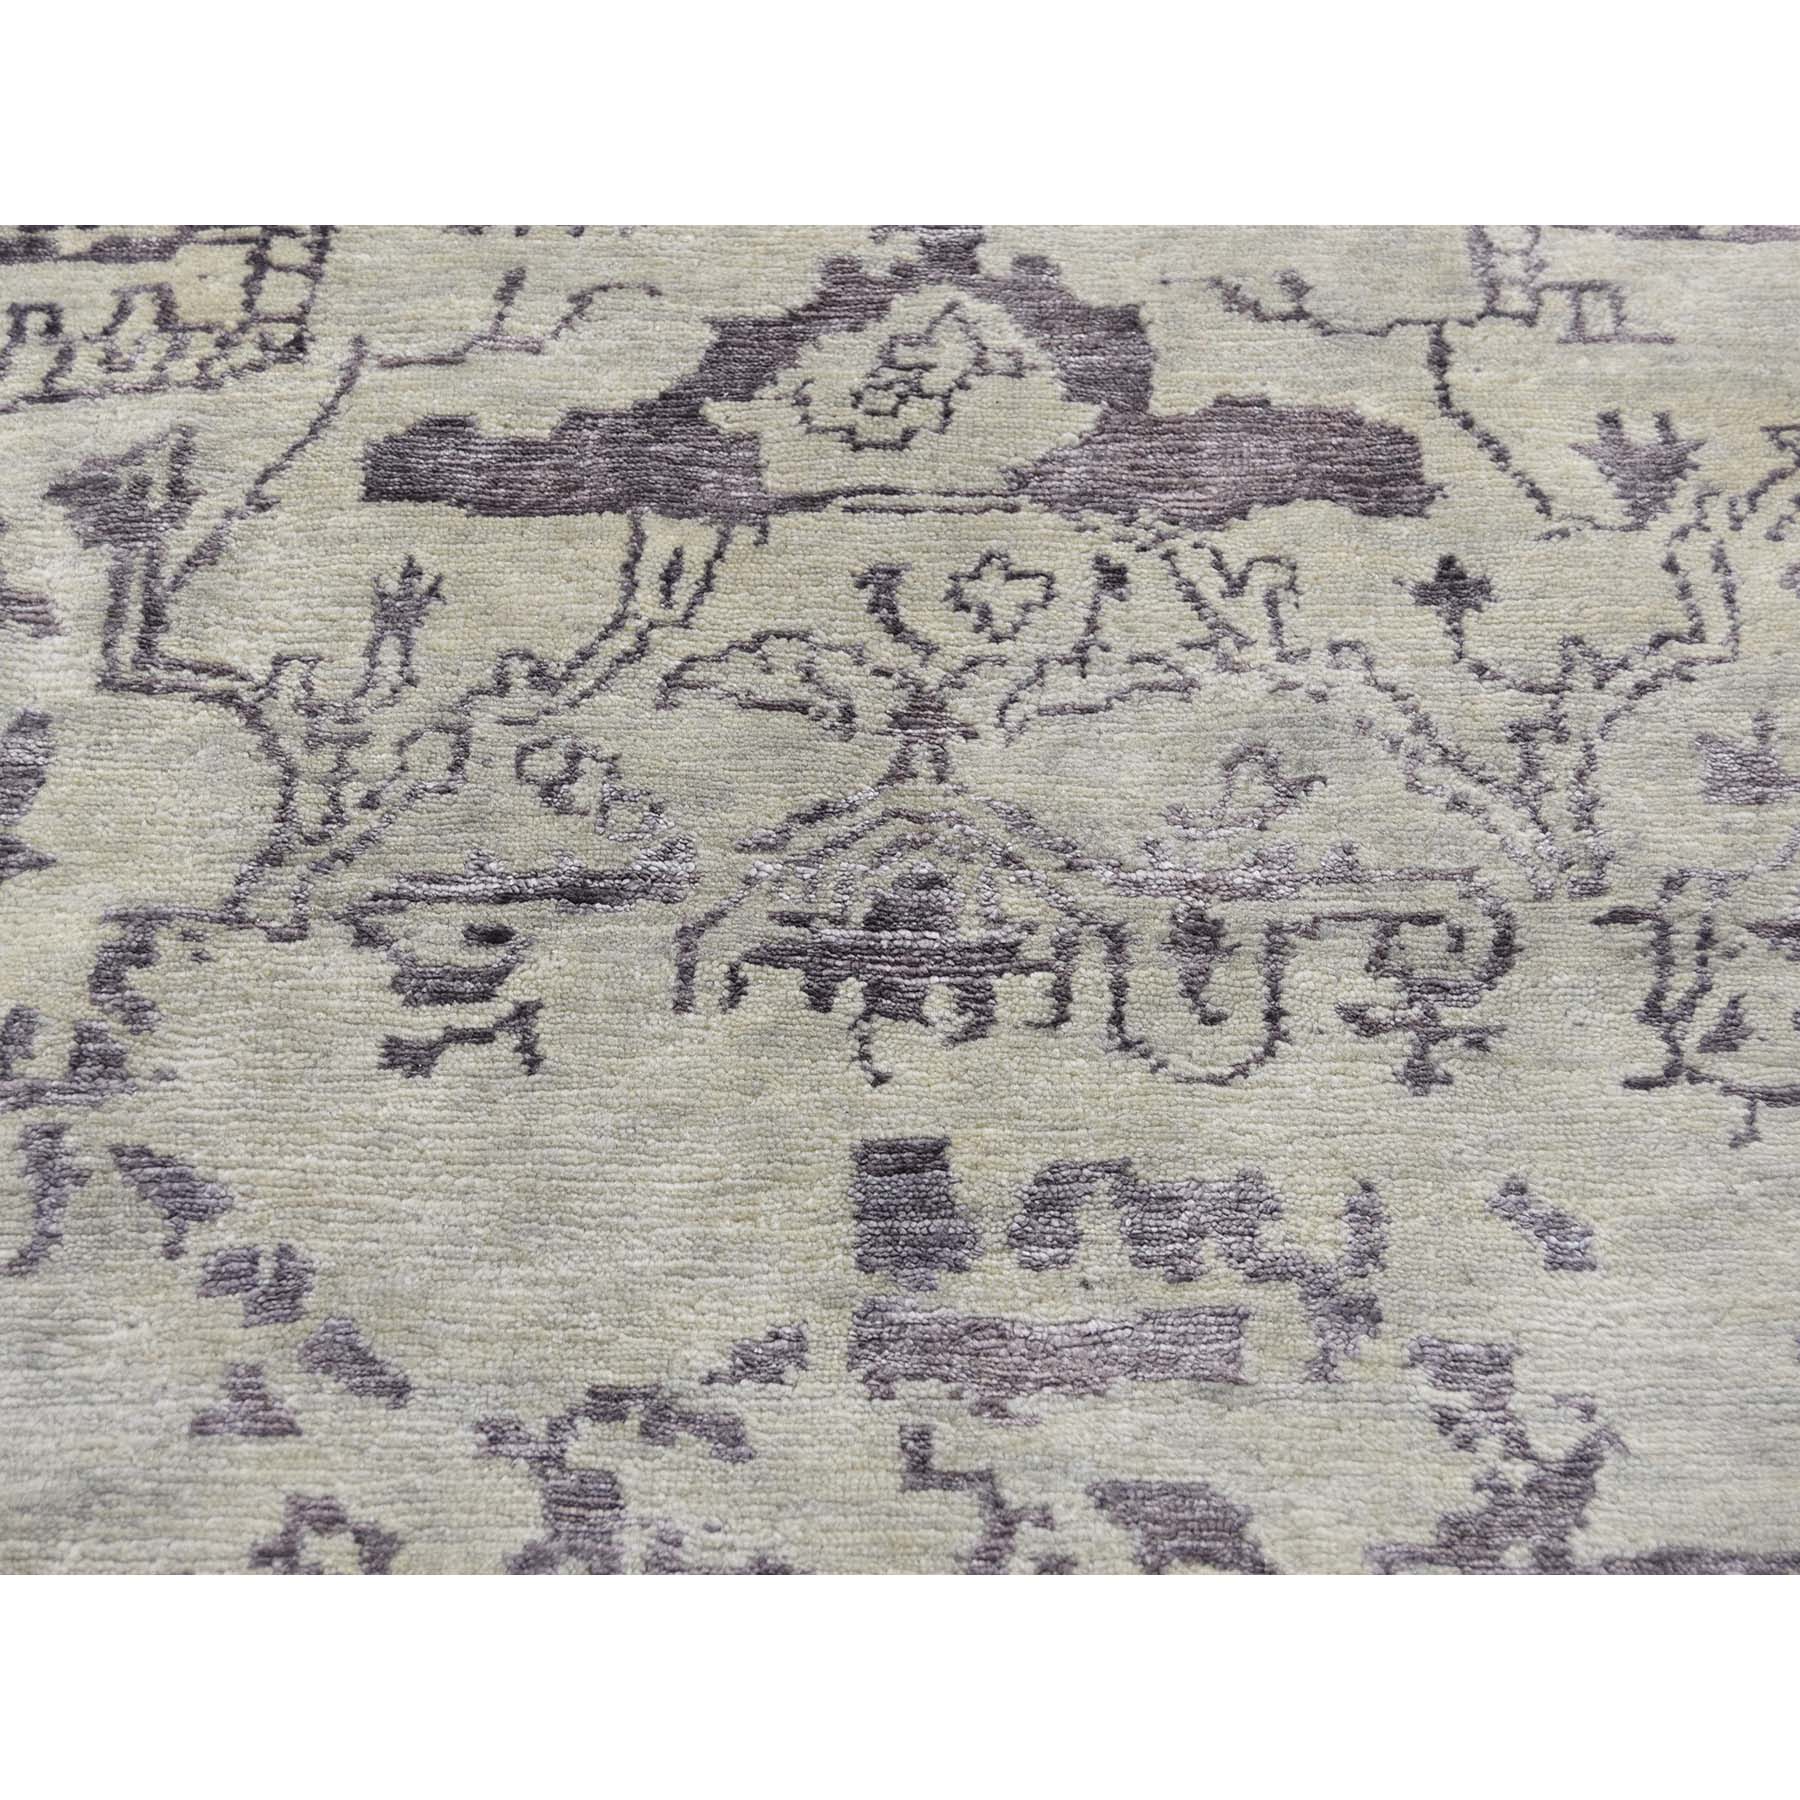 9-1 x12- Wool and Silk Tabriz Broken Design Oriental Rug Hand Knotted 